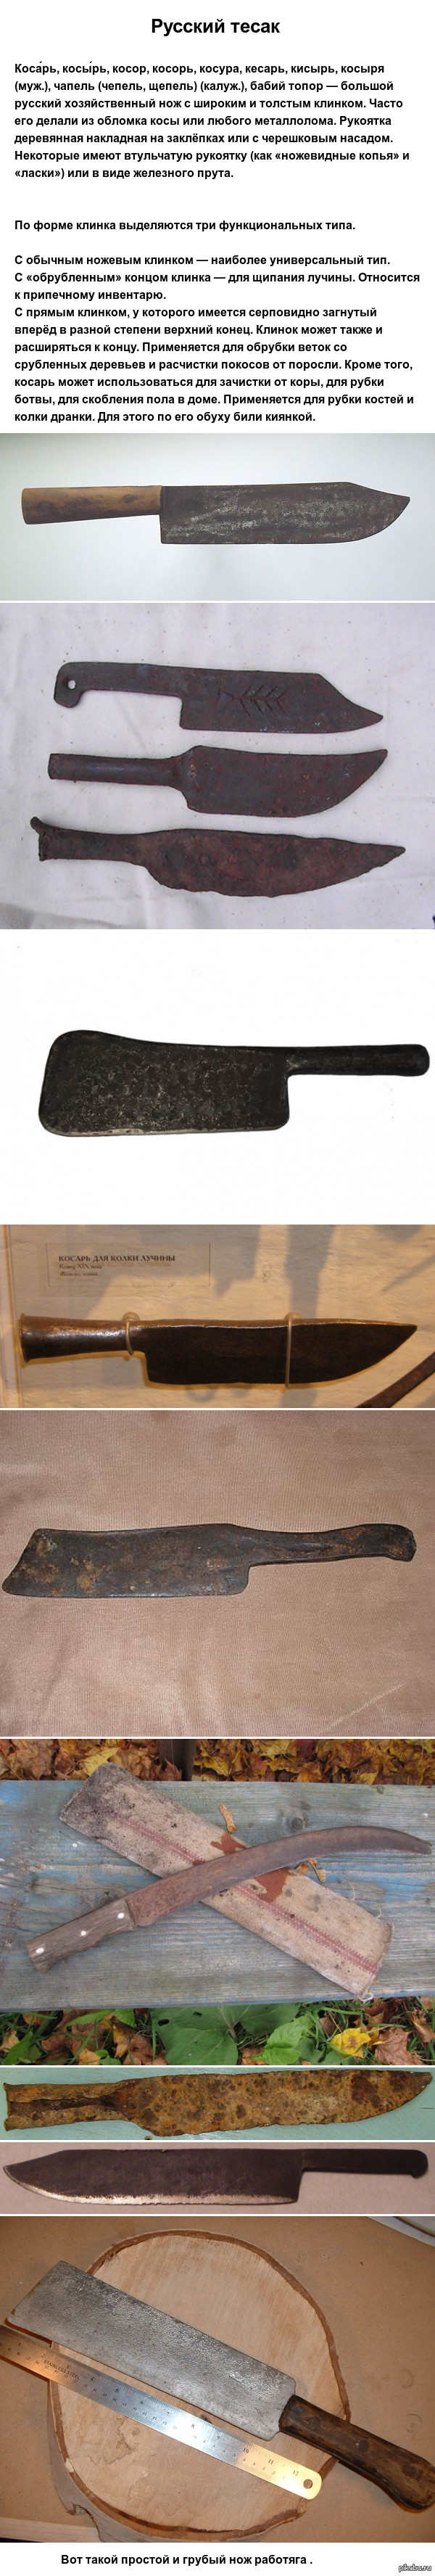 Нож косарь | Пикабу